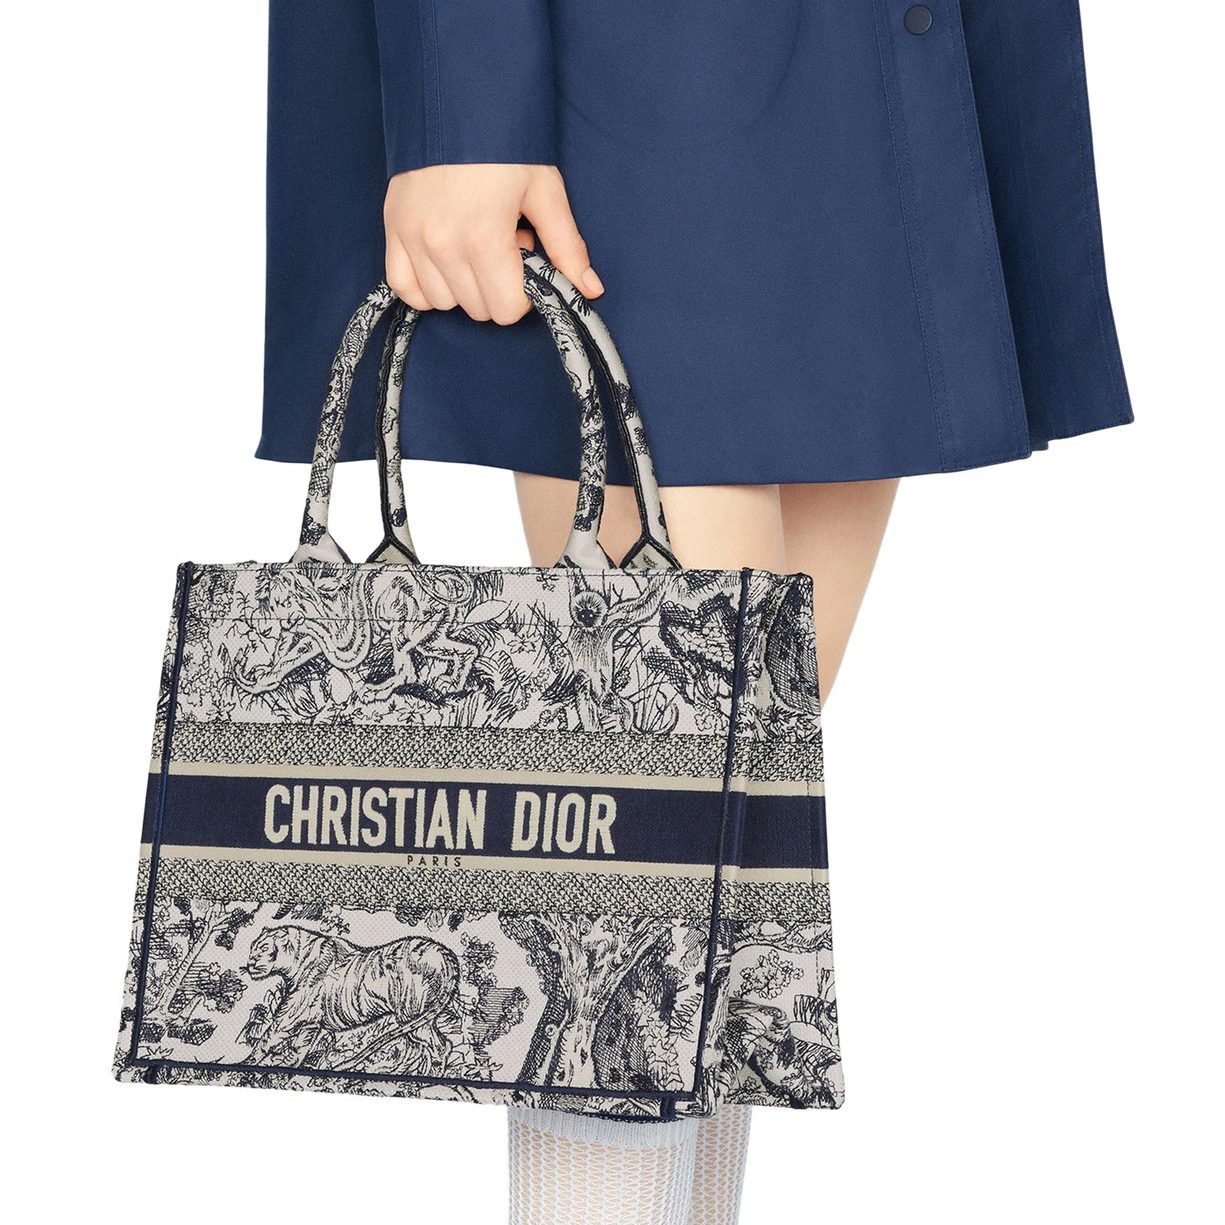 情人節禮物推薦6 : Dior配飾/包袋